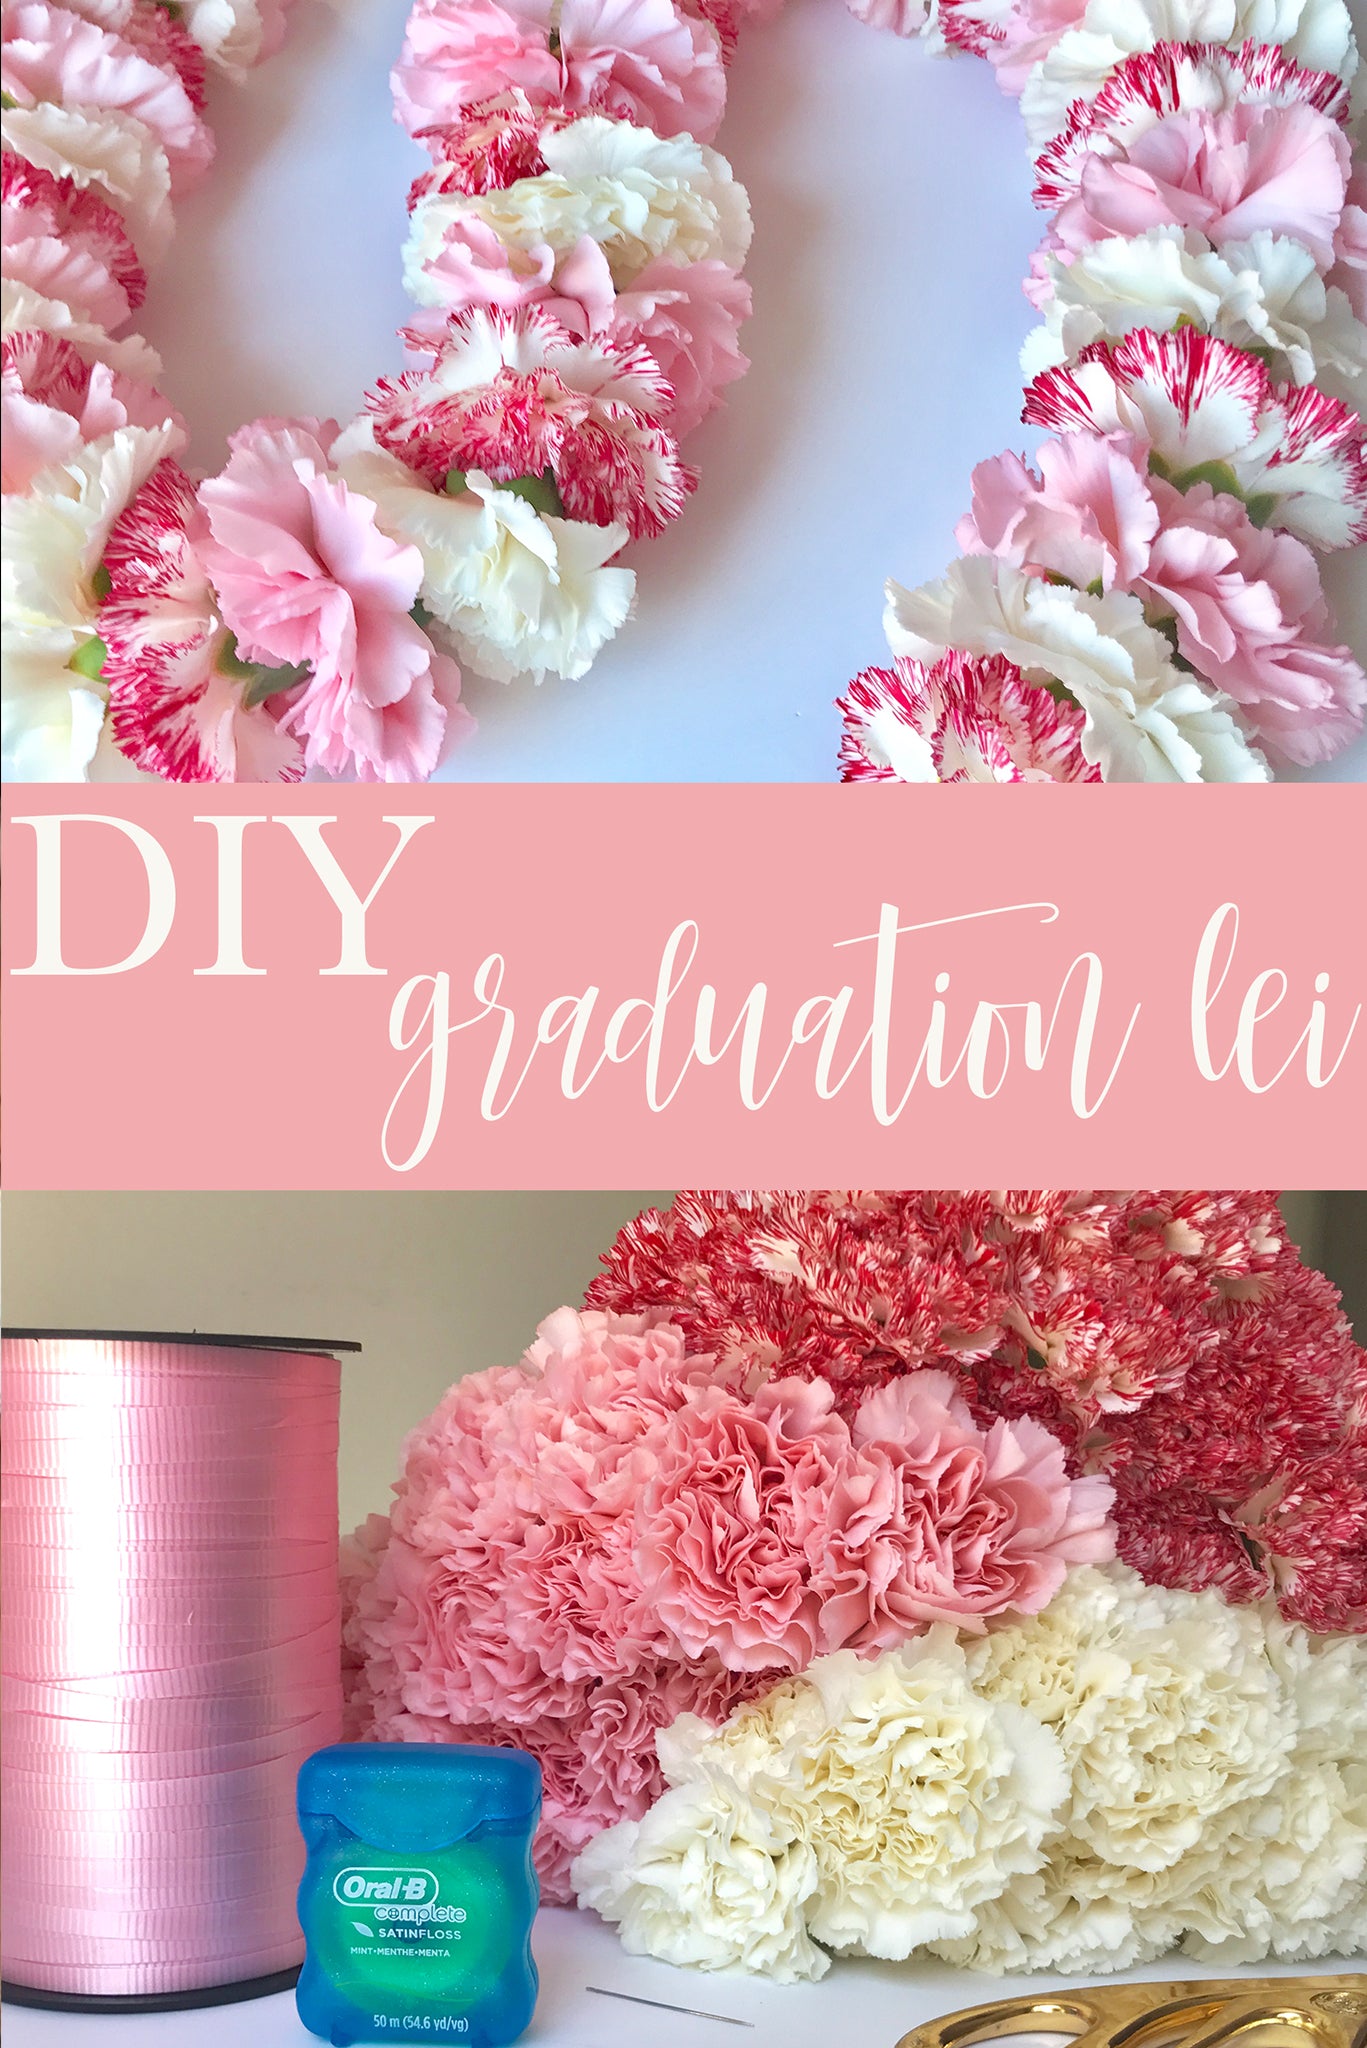 DIY Doormat Painting Kit - Floral - The Last Minute Bride